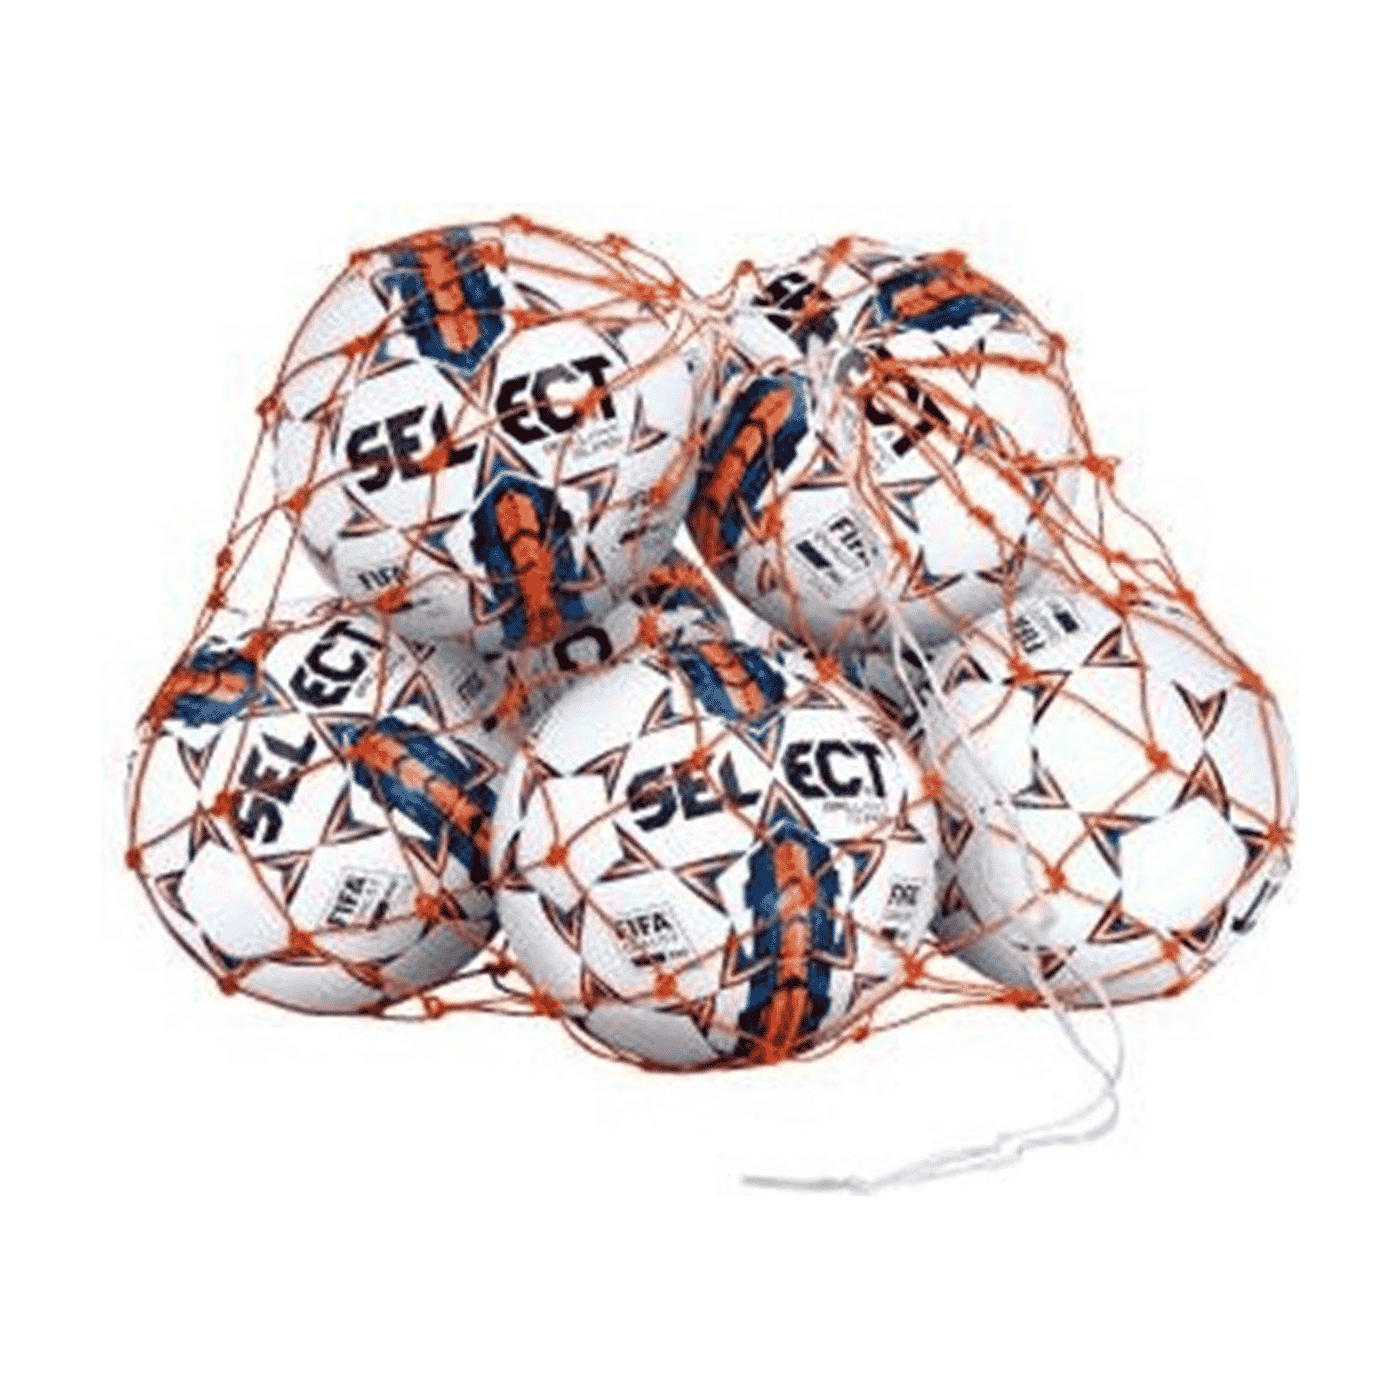 Gewoon overlopen Zichtbaar Hervat Select Ballennet 10 - 12 Voetballen - We Move Sports